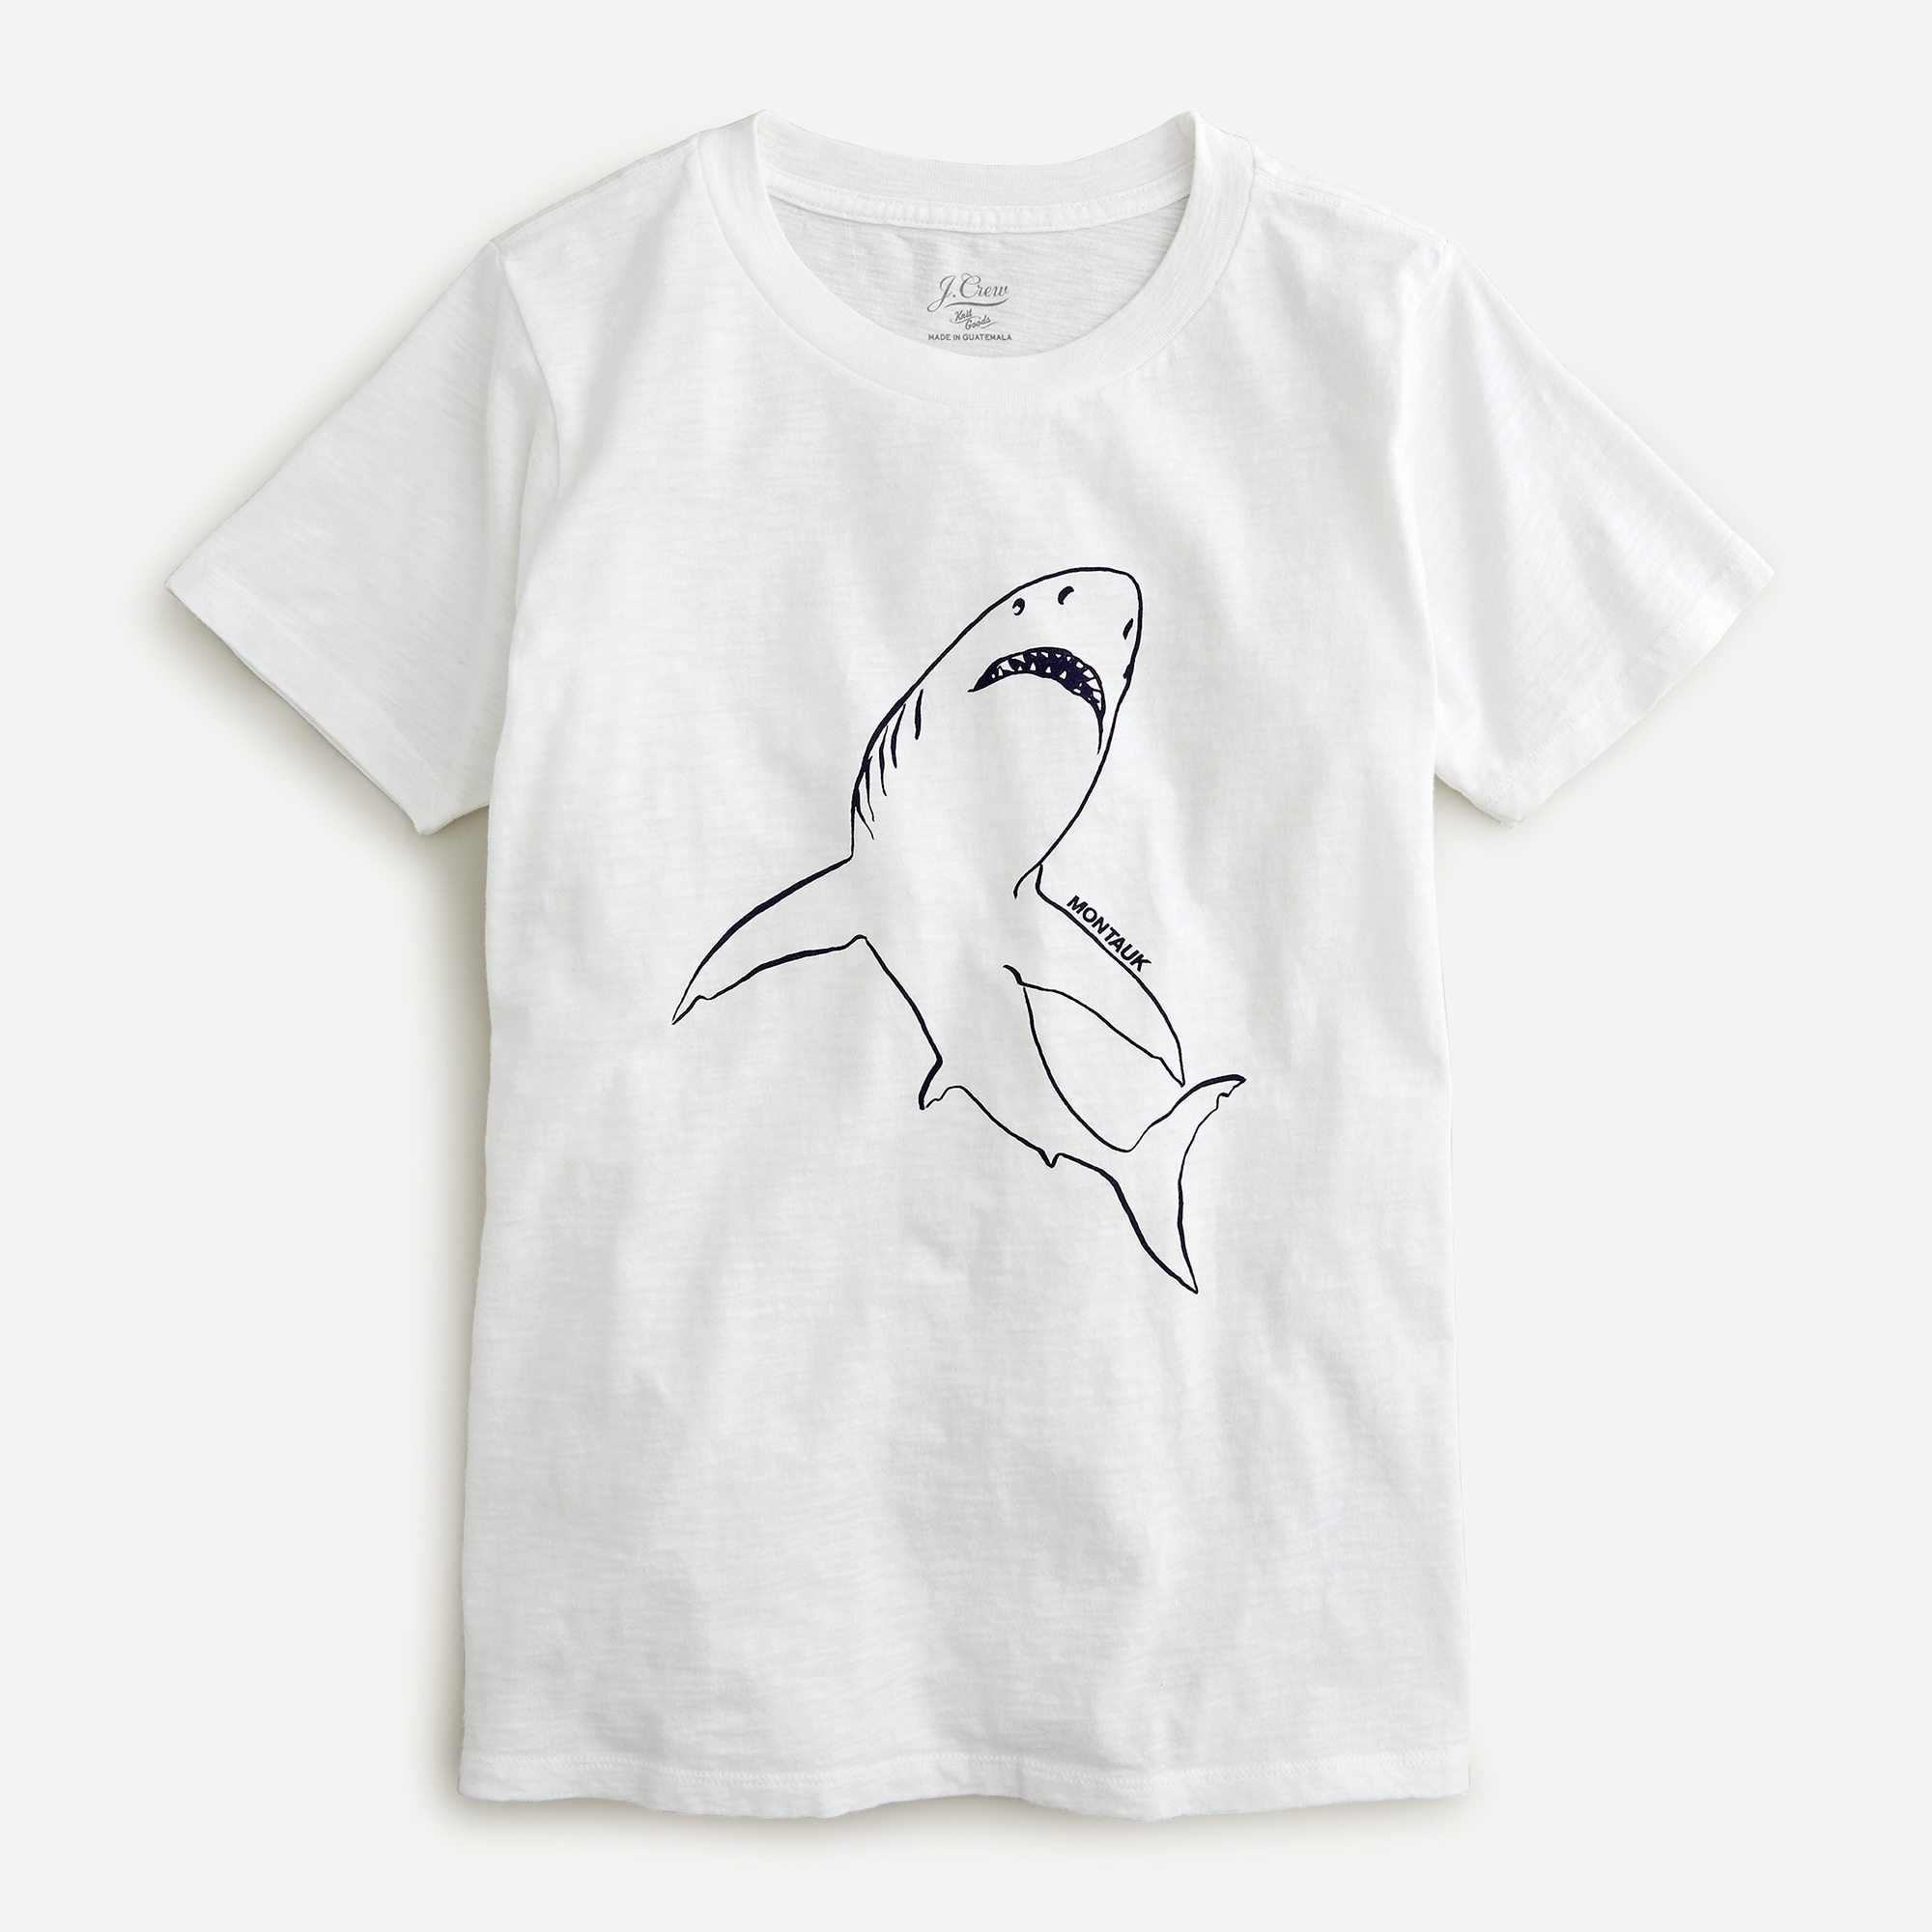 shark t shirt